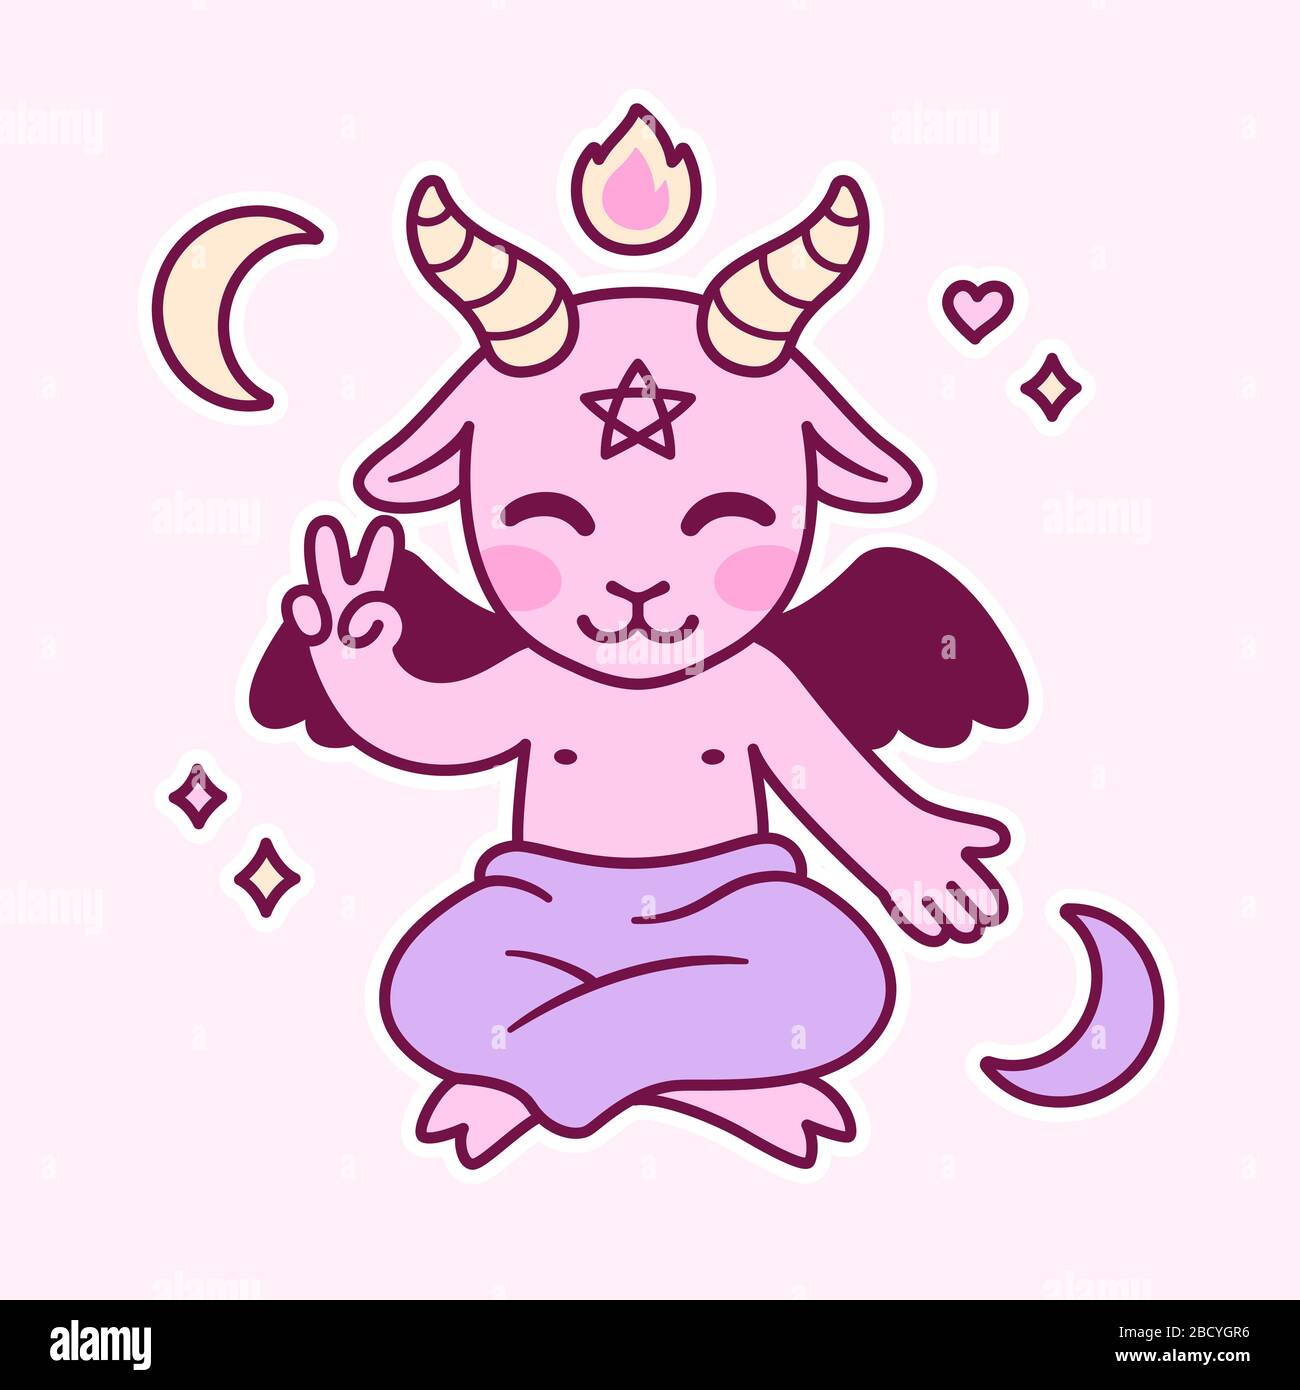 Carino cartoon Satana disegno, kawaii diavolo rosa con pentagramma, fuoco e mezzaluna lune. Piccolo Baphomet, simbolo satanico illustrazione vettoriale. Illustrazione Vettoriale